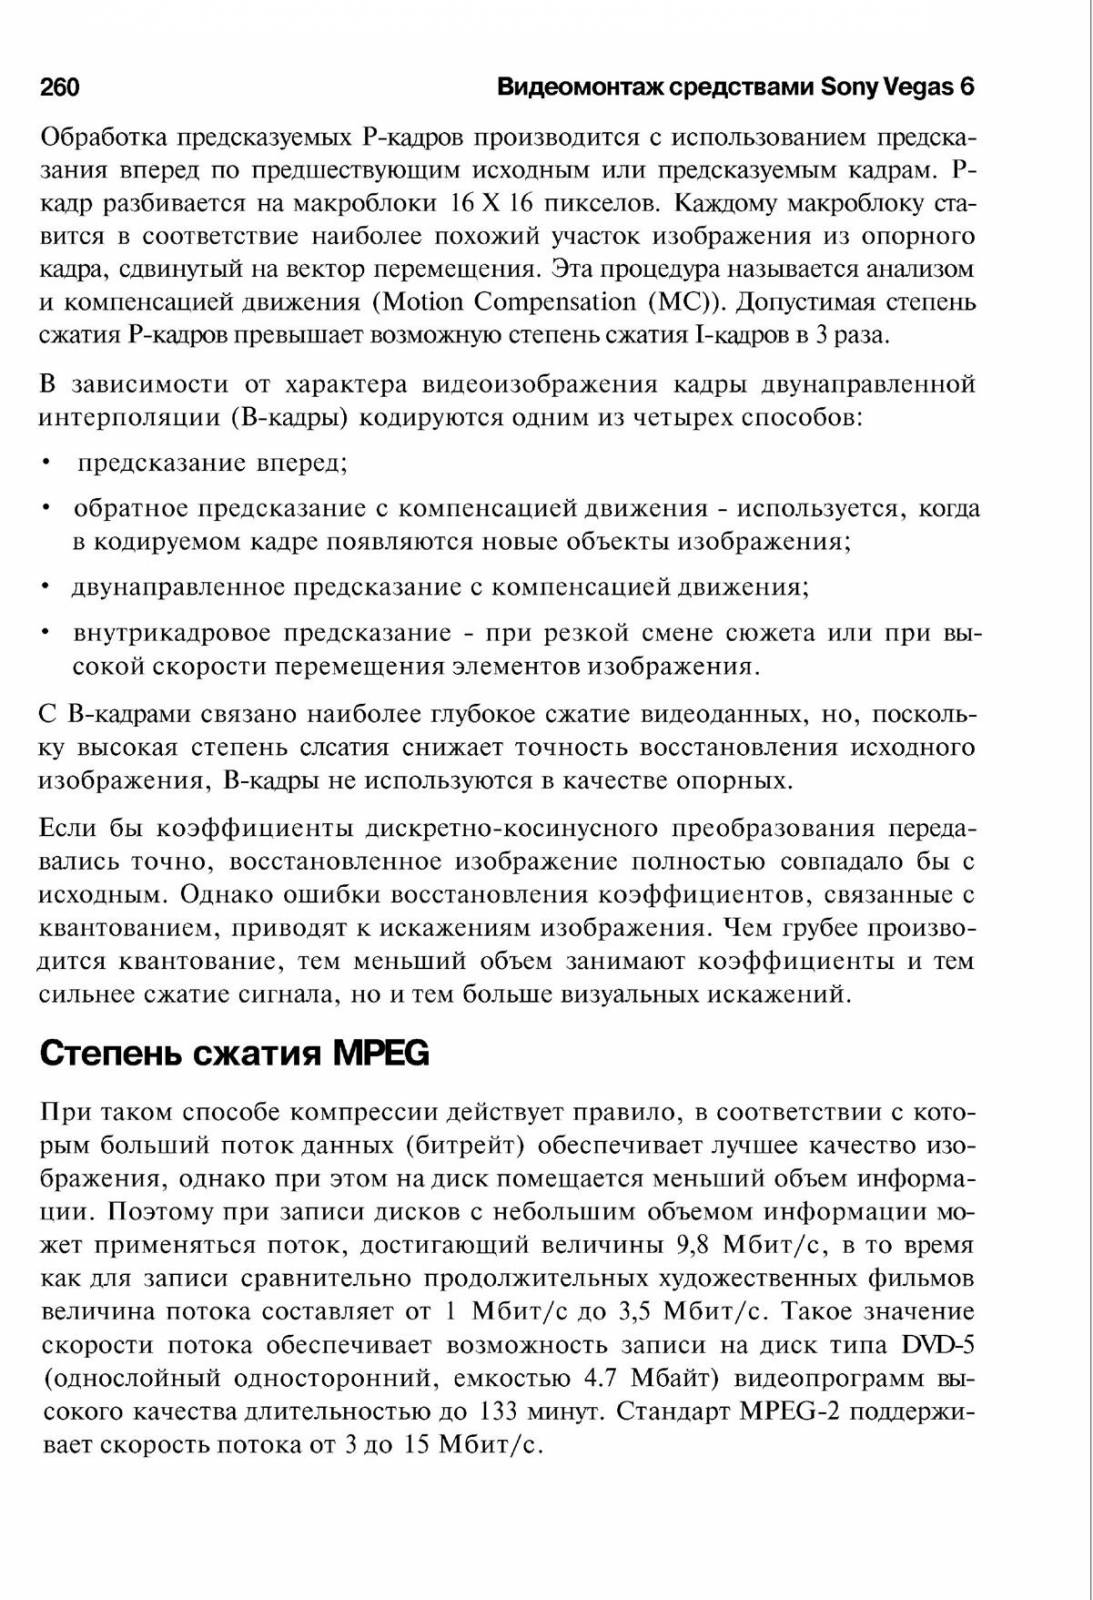 http://redaktori-uroki.3dn.ru/_ph/14/406343340.jpg